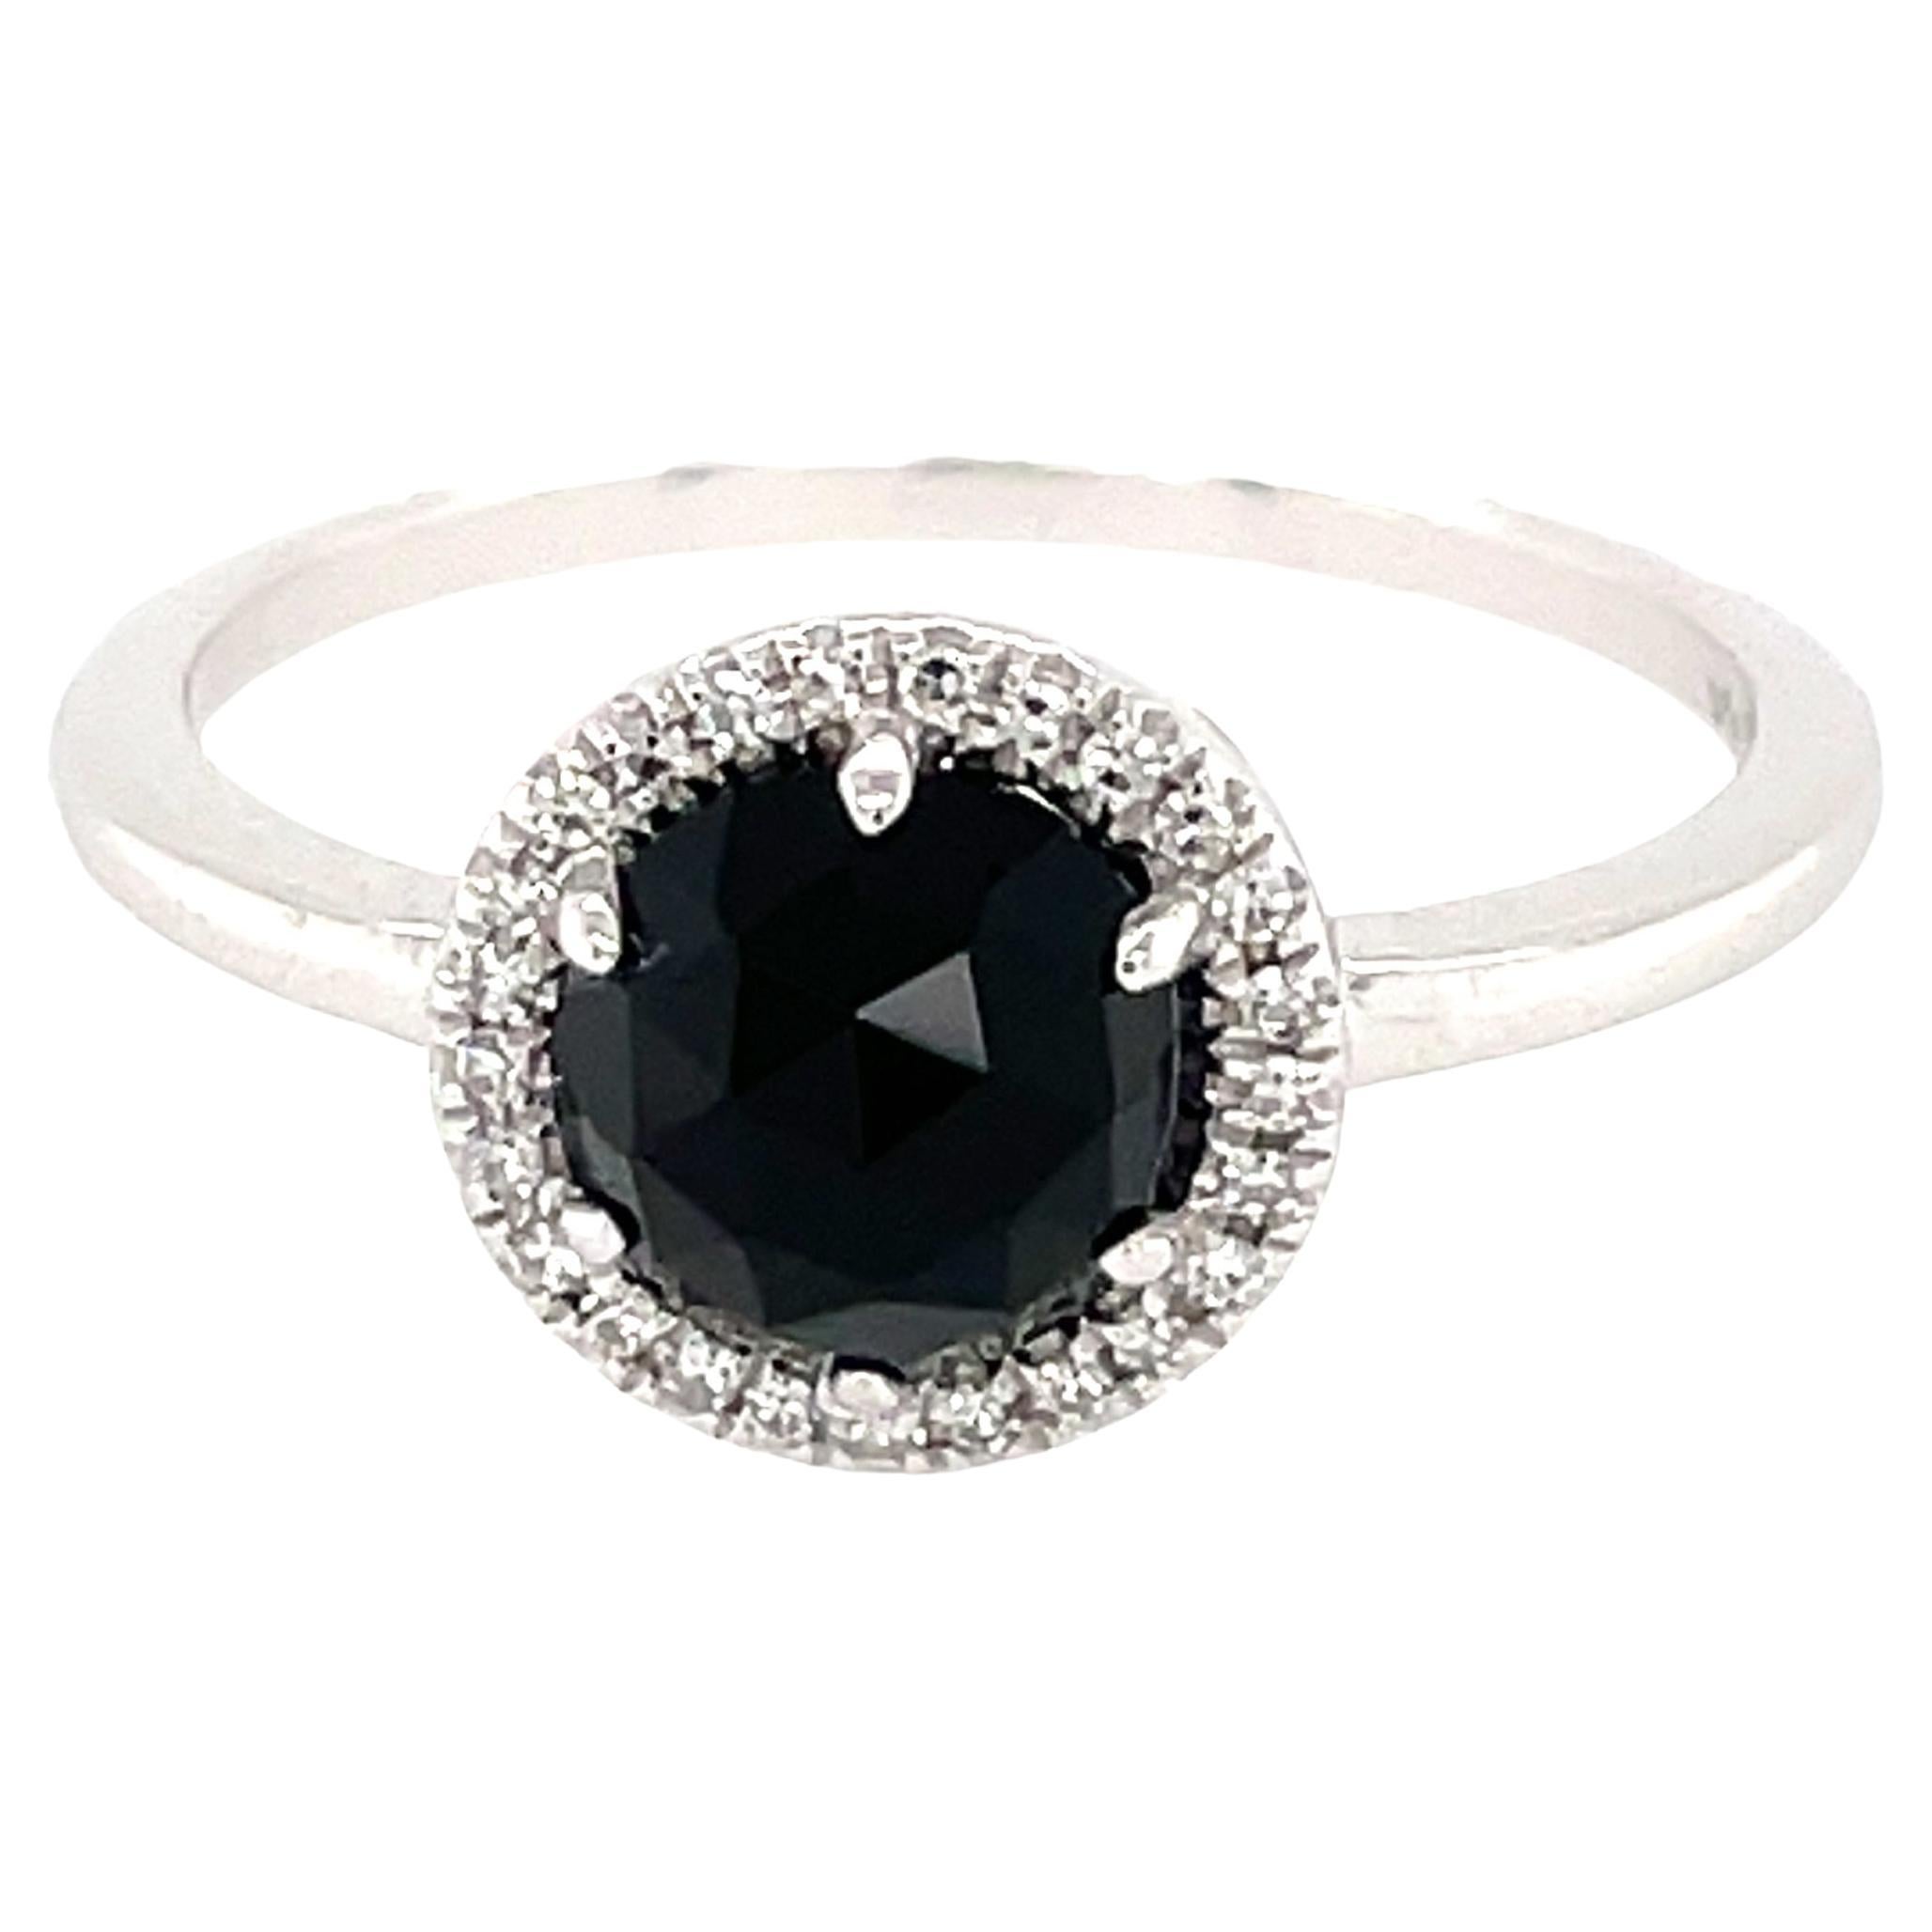 Dieser Ring aus schwarzem Onyx und Diamanten ist ein atemberaubendes und zeitloses Accessoire, das jedem Outfit einen Hauch von Glamour und Raffinesse verleihen kann. 

Dieser Ring besteht aus einem 1,09 Karat schweren schwarzen Onyx mit einem